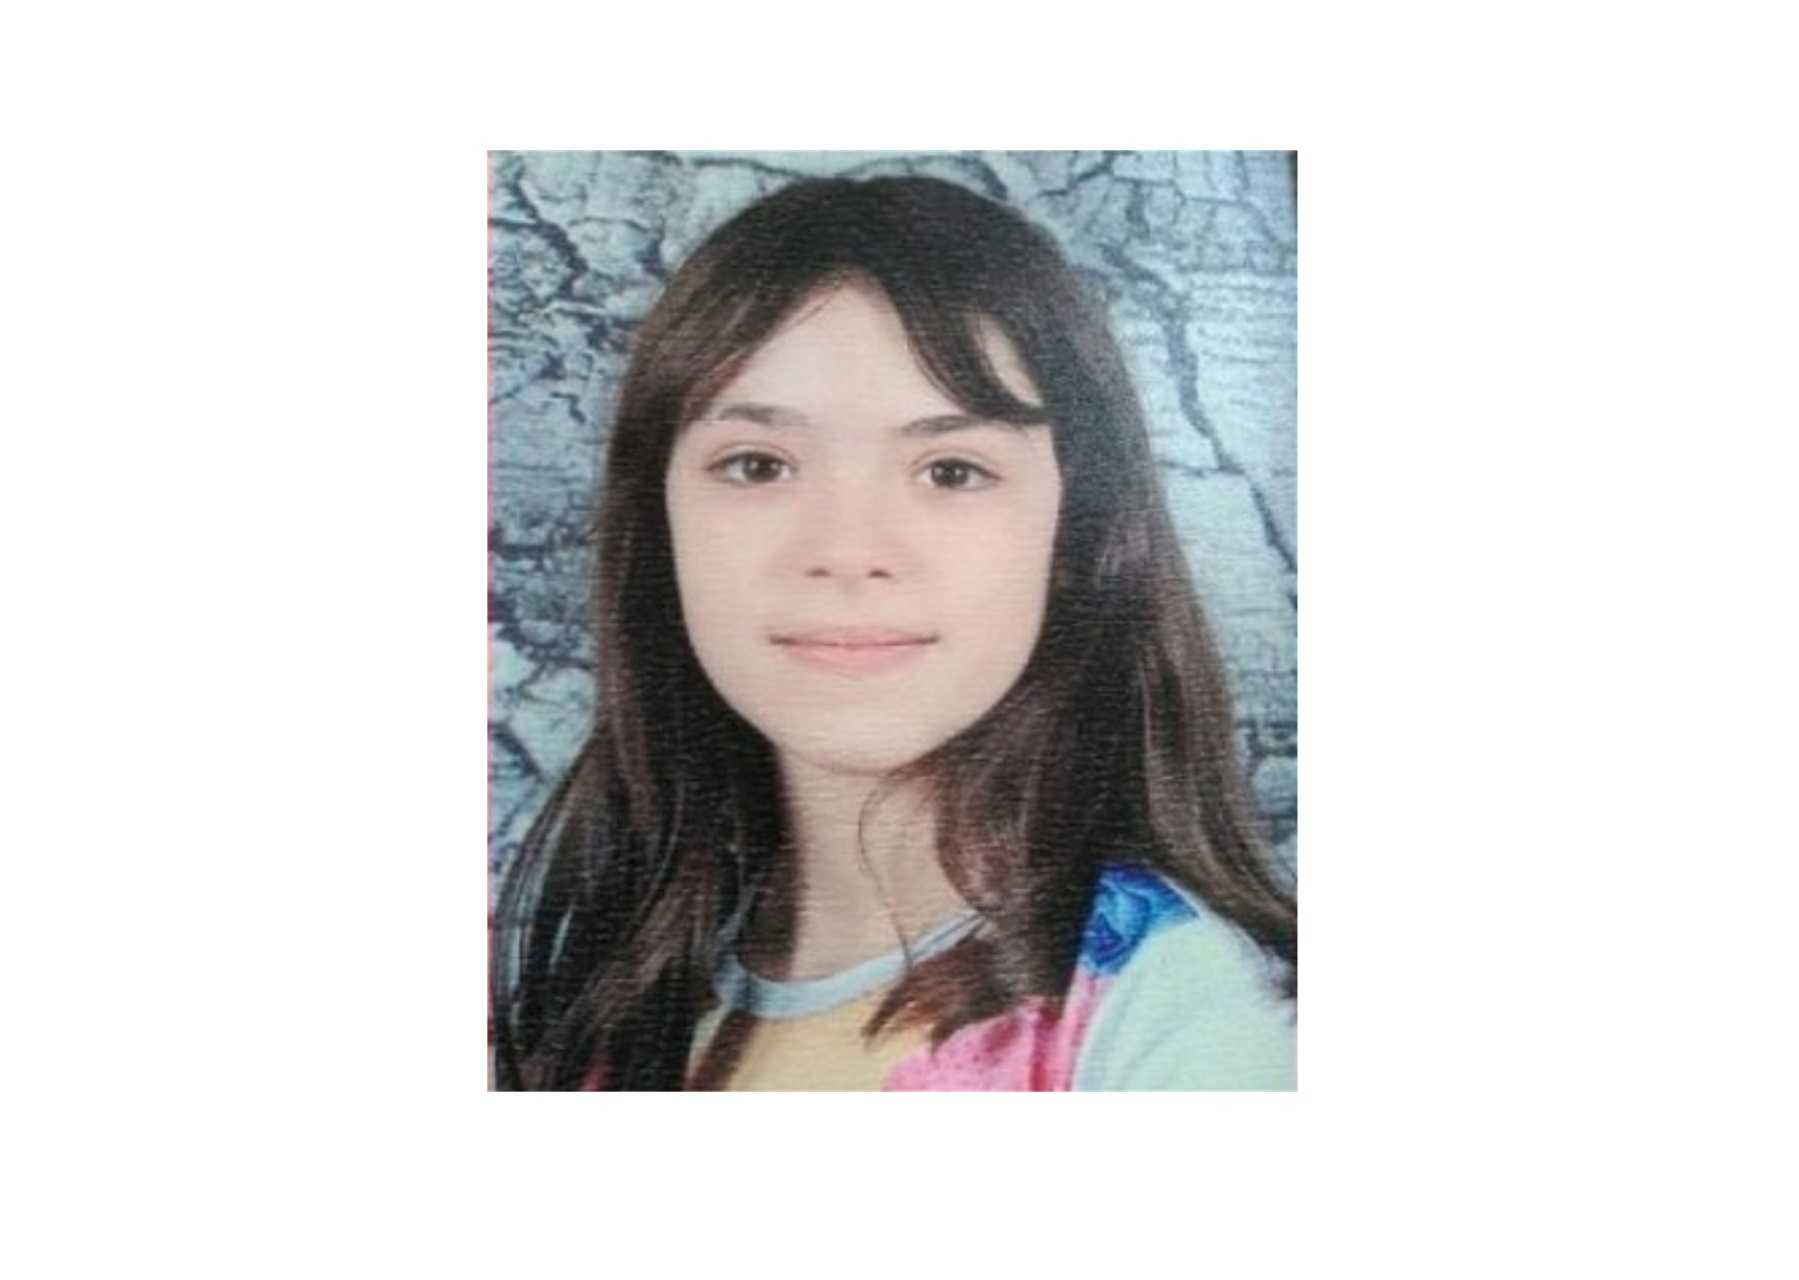 Θεσσαλονίκη: Σε πρατήριο καυσίμων βρέθηκε η 10χρονη Μαρκέλλα